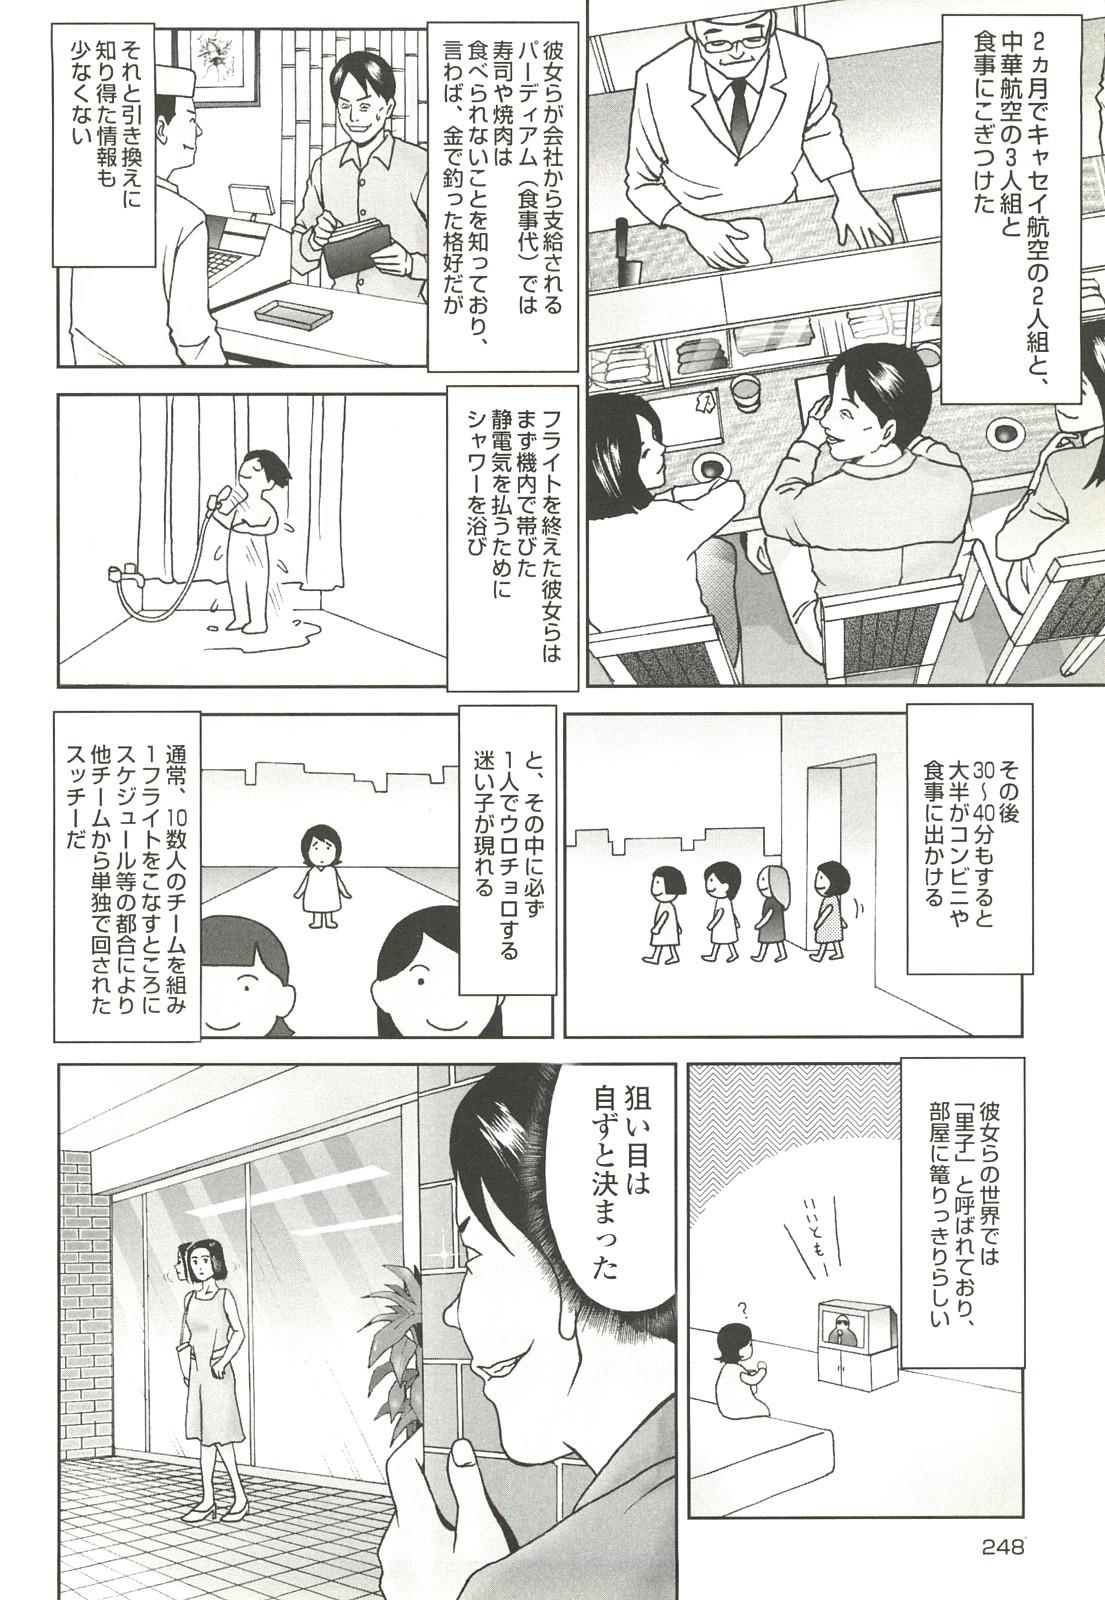 コミック裏モノJAPAN Vol.18 今井のりたつスペシャル号 247